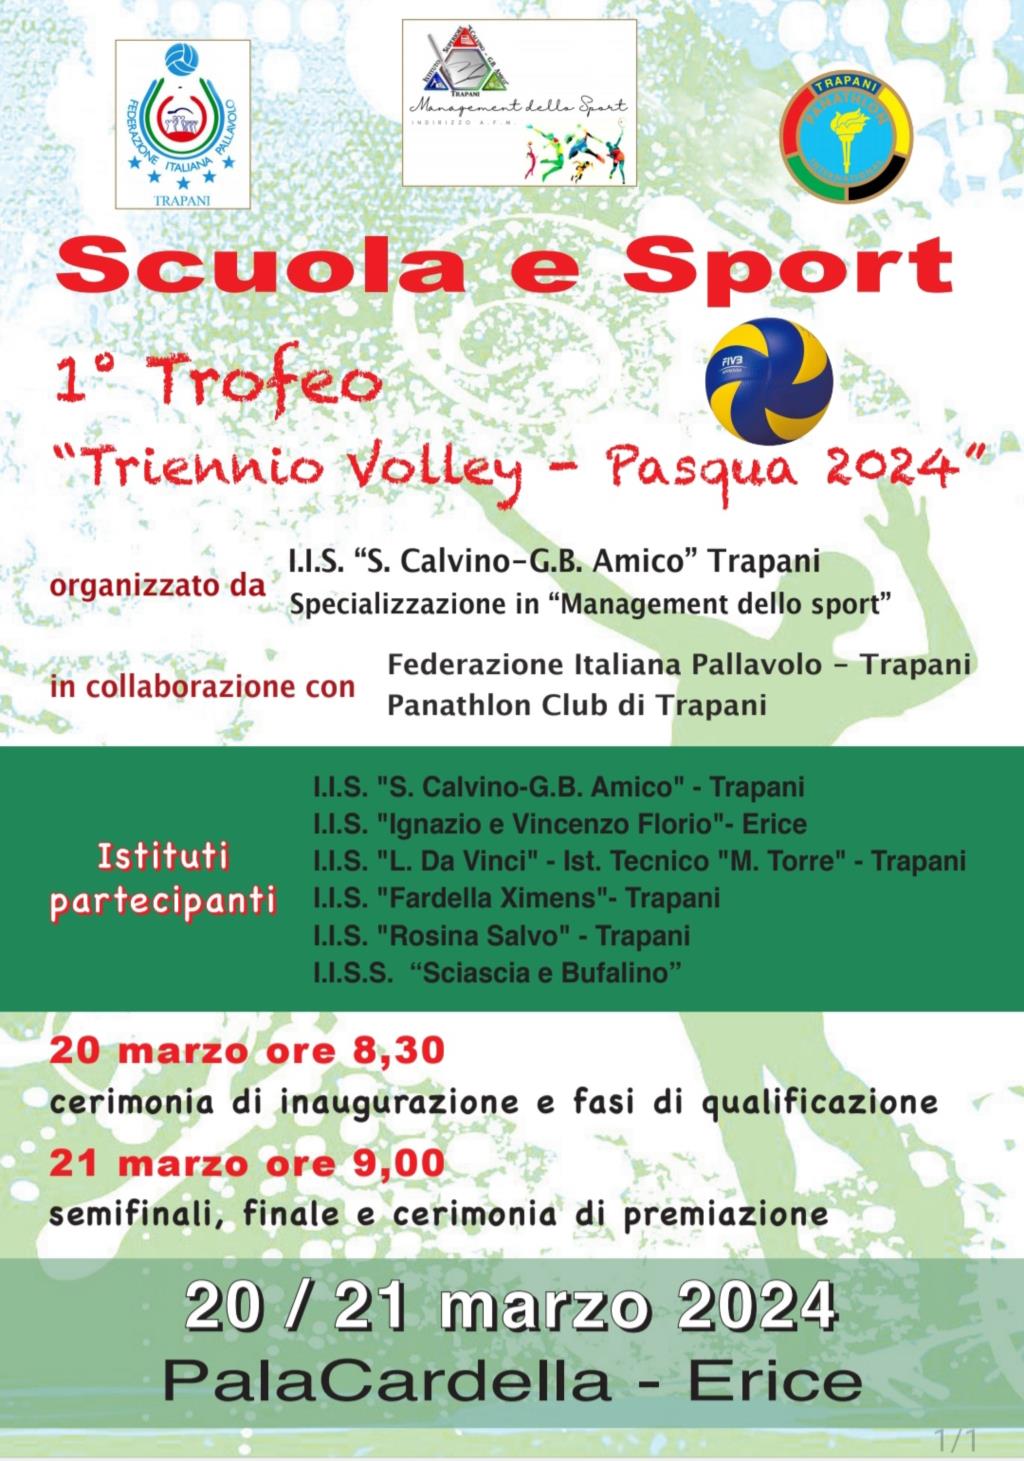 Domani e dopodomani si svolgerà il “1° Trofeo Triennio Volley-Pasqua 2024”